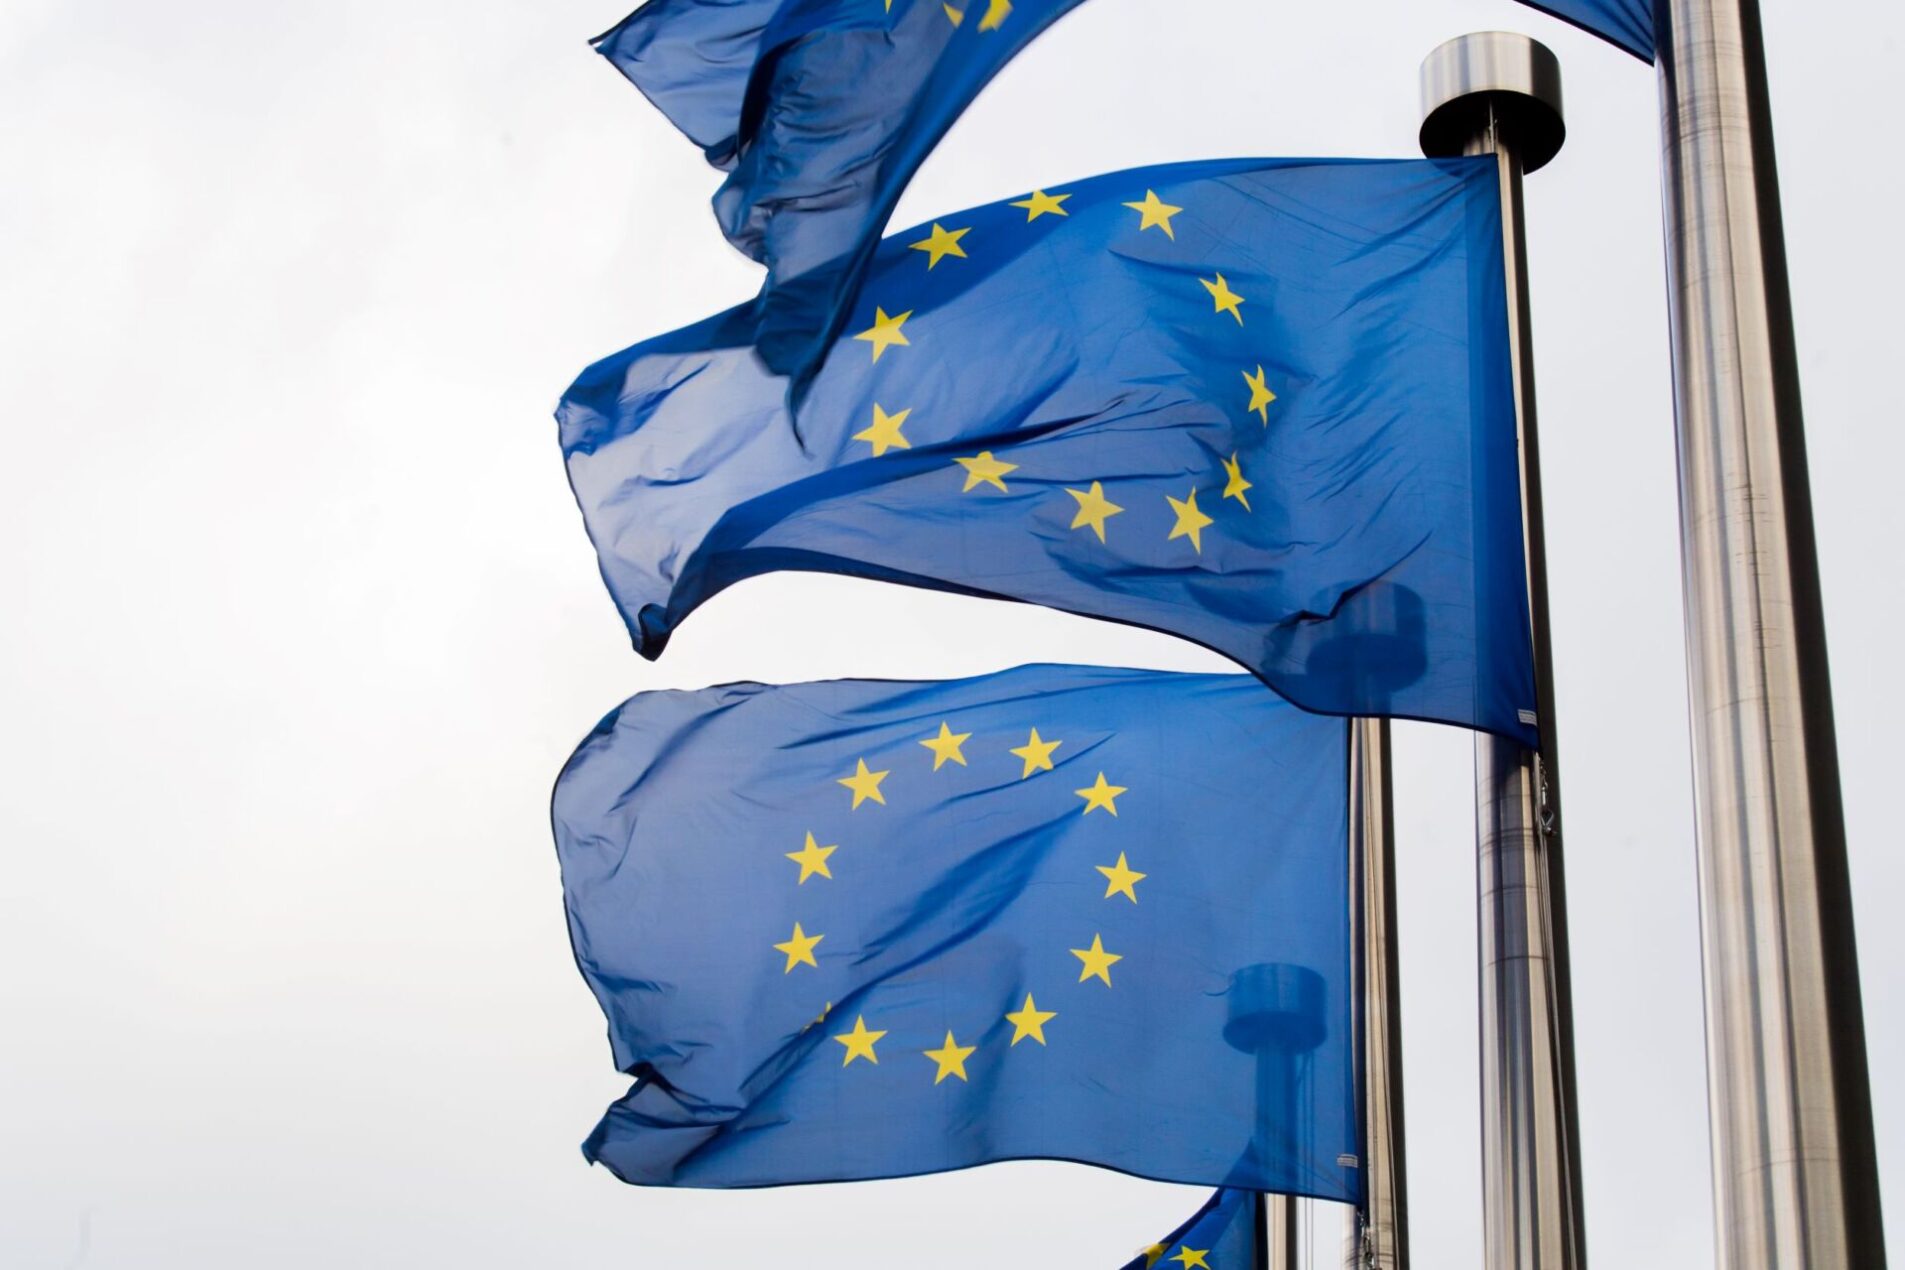 Komissio on hyväksynyt Horisontti Eurooppa -puiteohjelman päätyöohjelman vuosiksi 2023 ja 2024